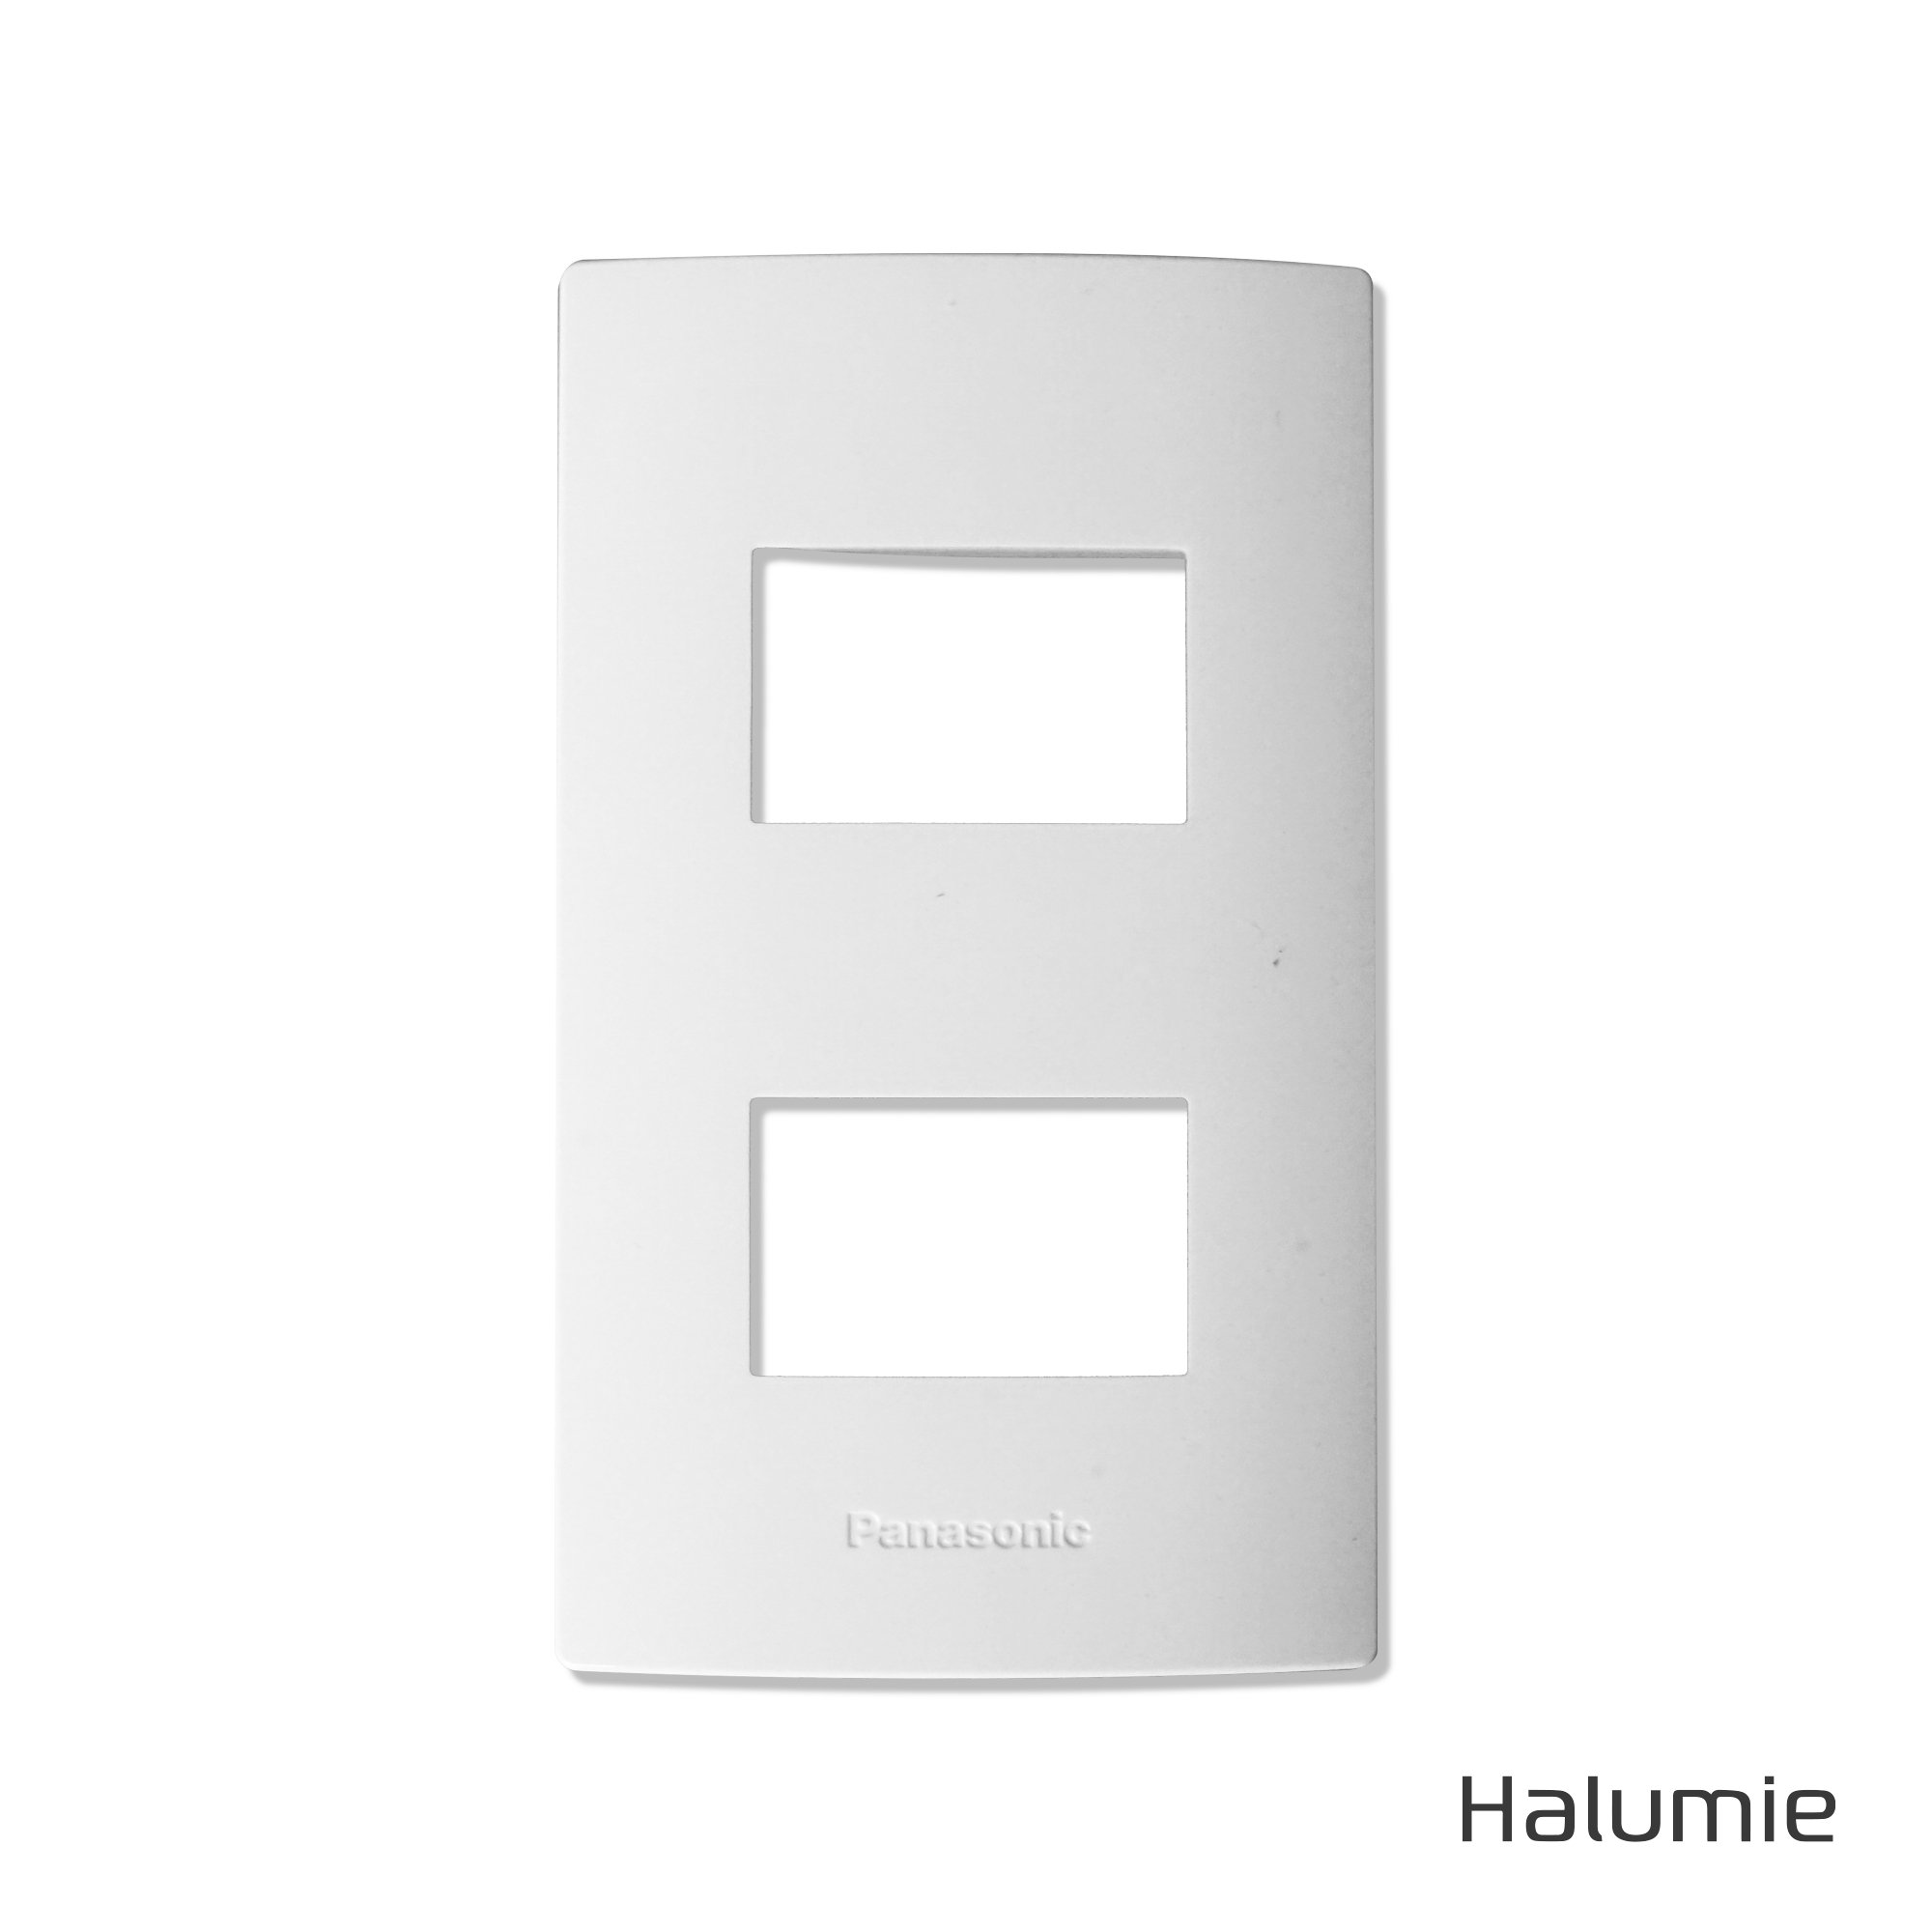 Mặt 2 thiết bị / Halumie Panasonic